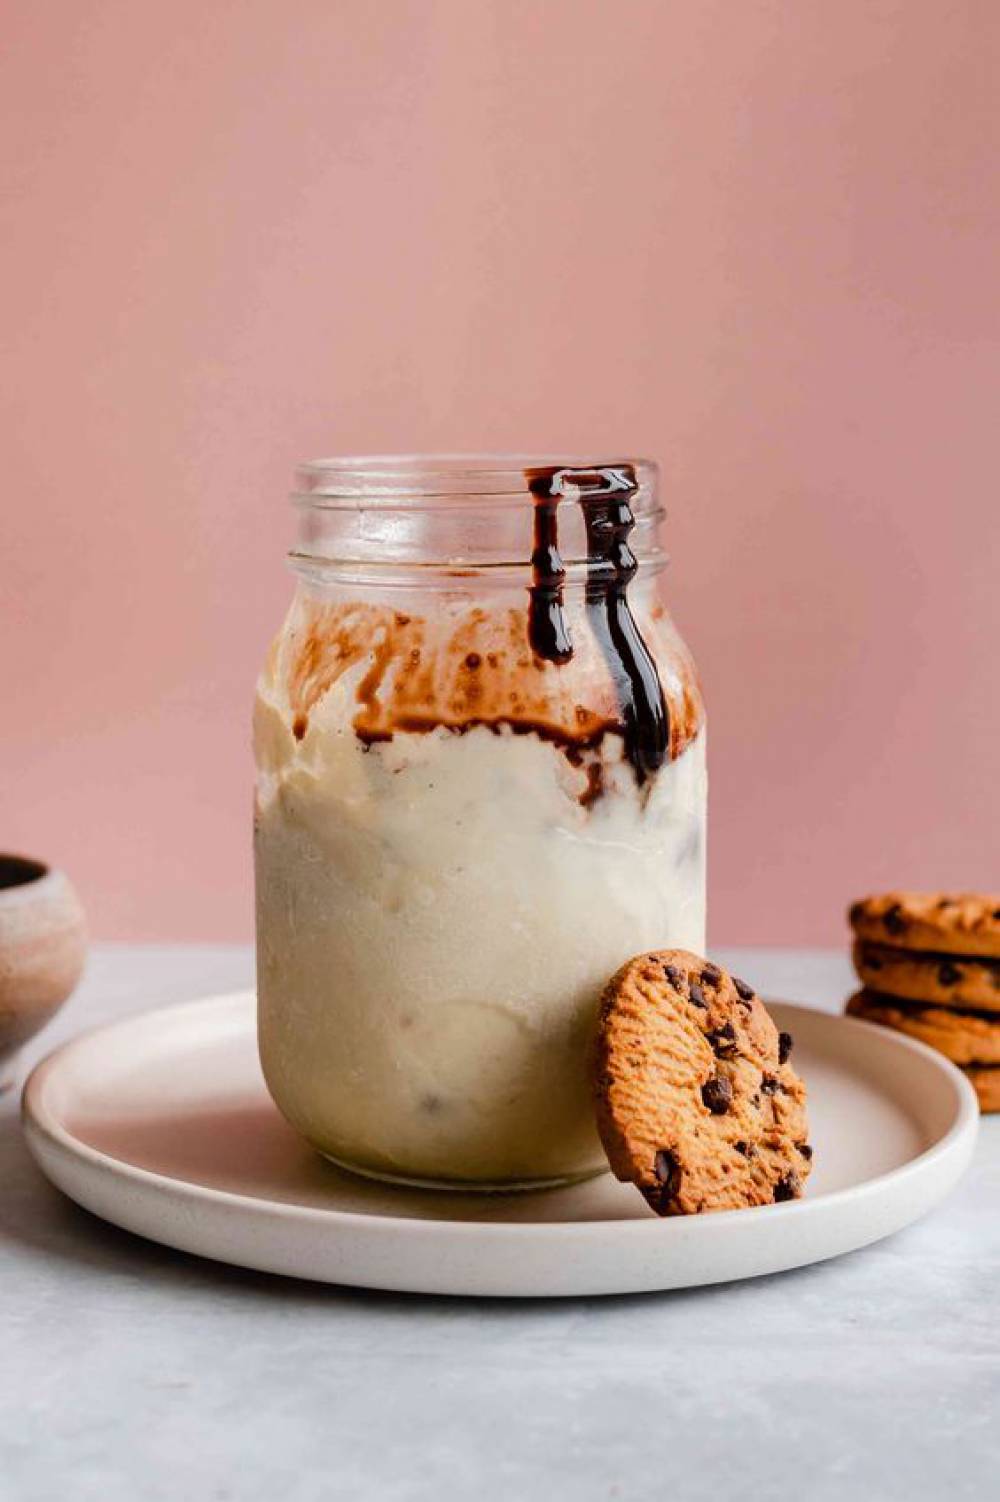 تهیه بستنی شیشه‌ای (Mason jar) در خانه ، راه سریع لذت بردن از دسر